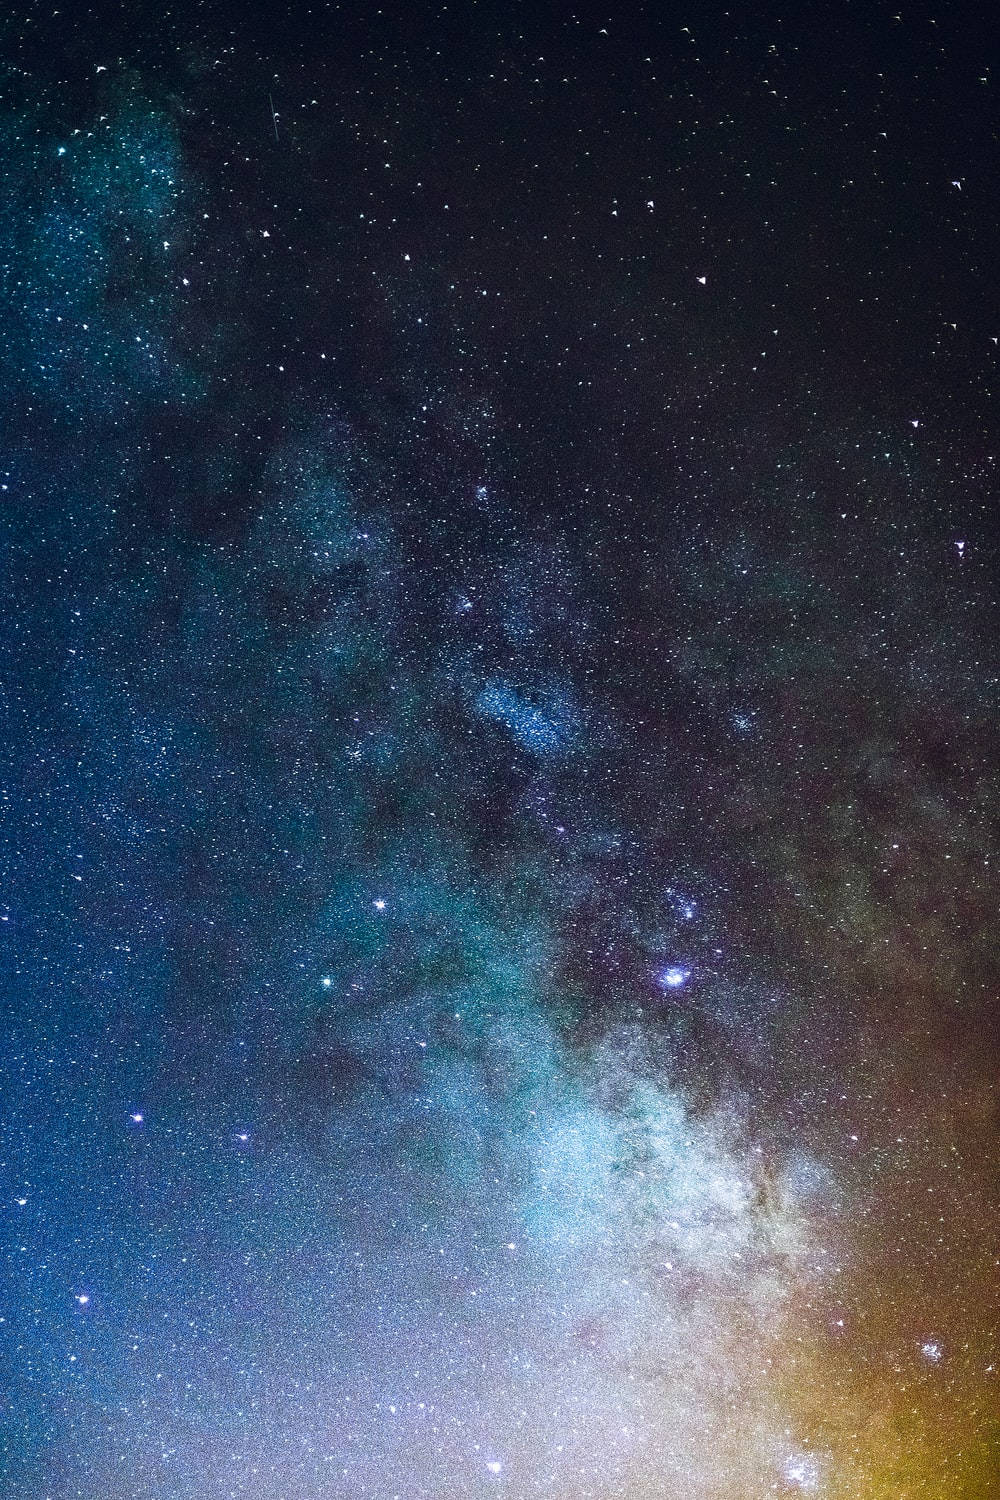 Cielonocturno Estrellado Sin Derechos De Autor. Fondo de pantalla